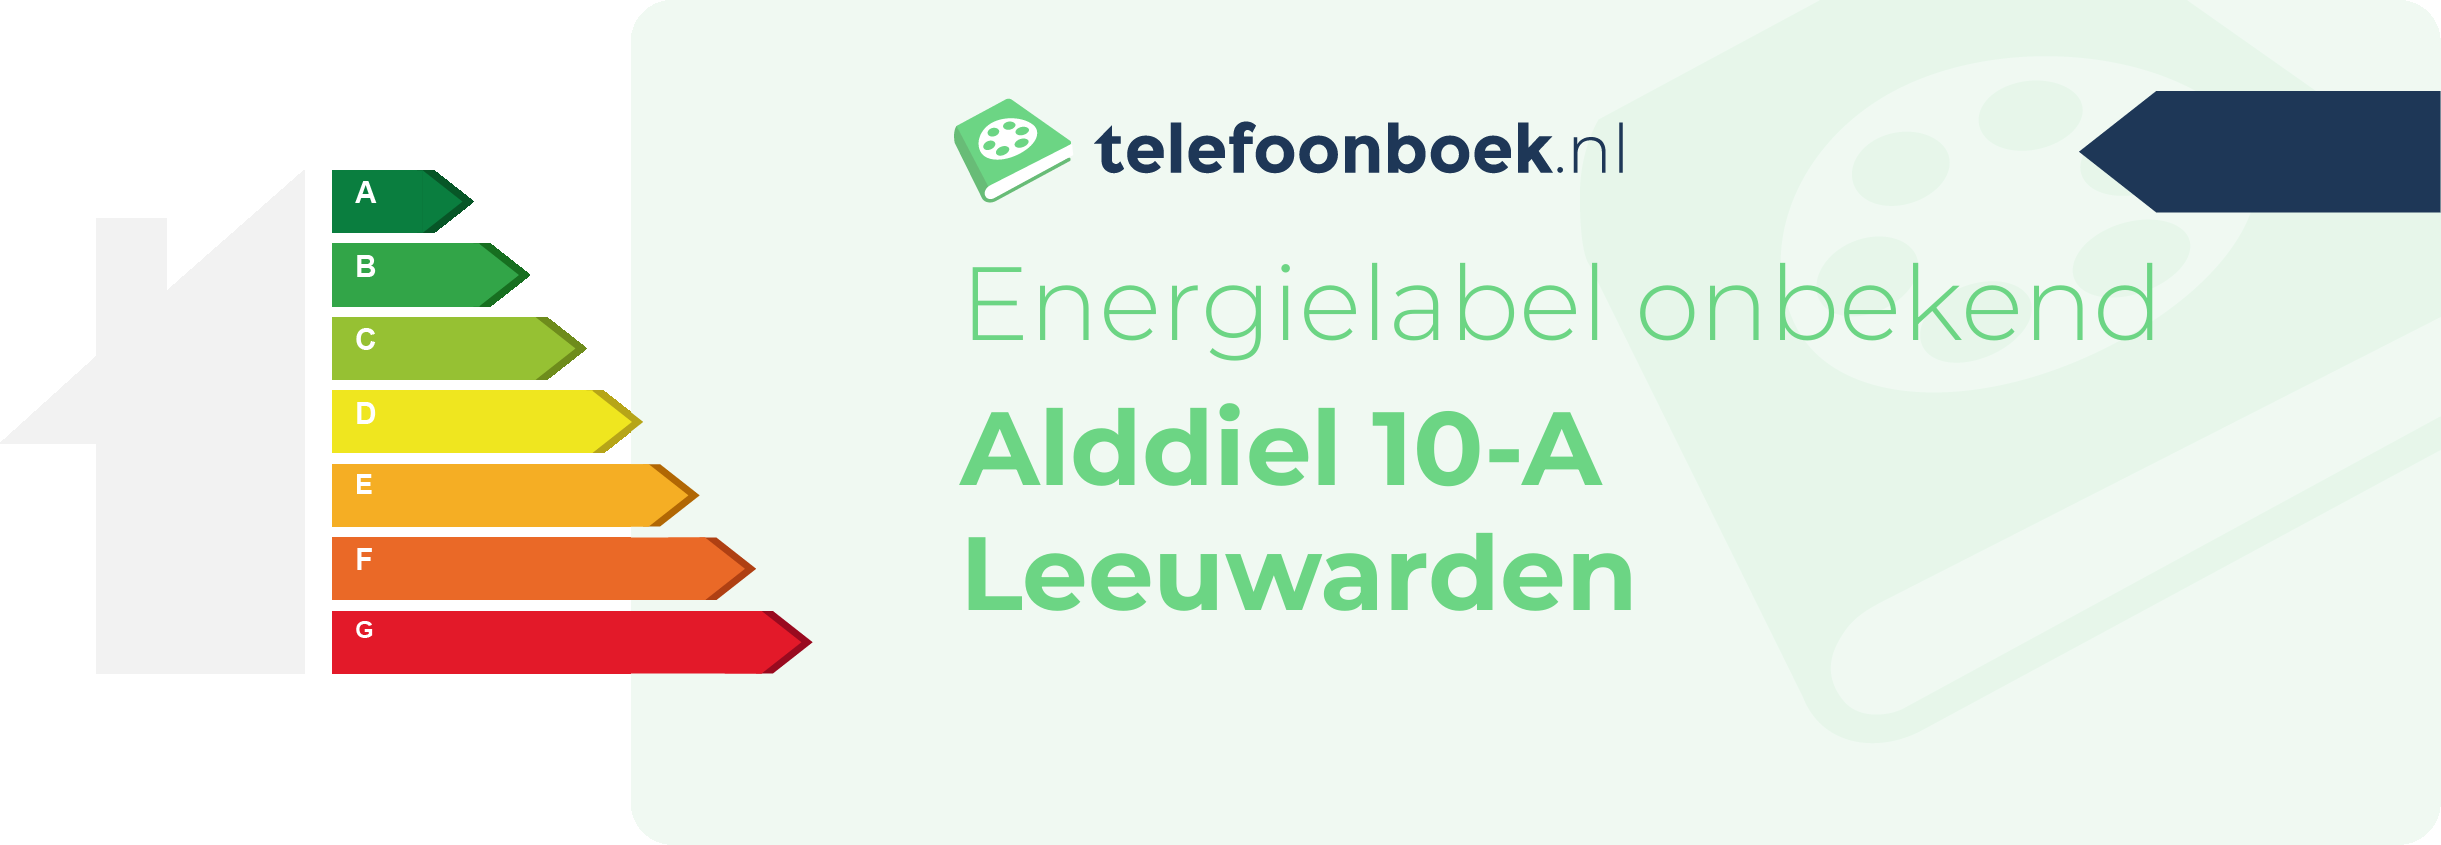 Energielabel Alddiel 10-A Leeuwarden